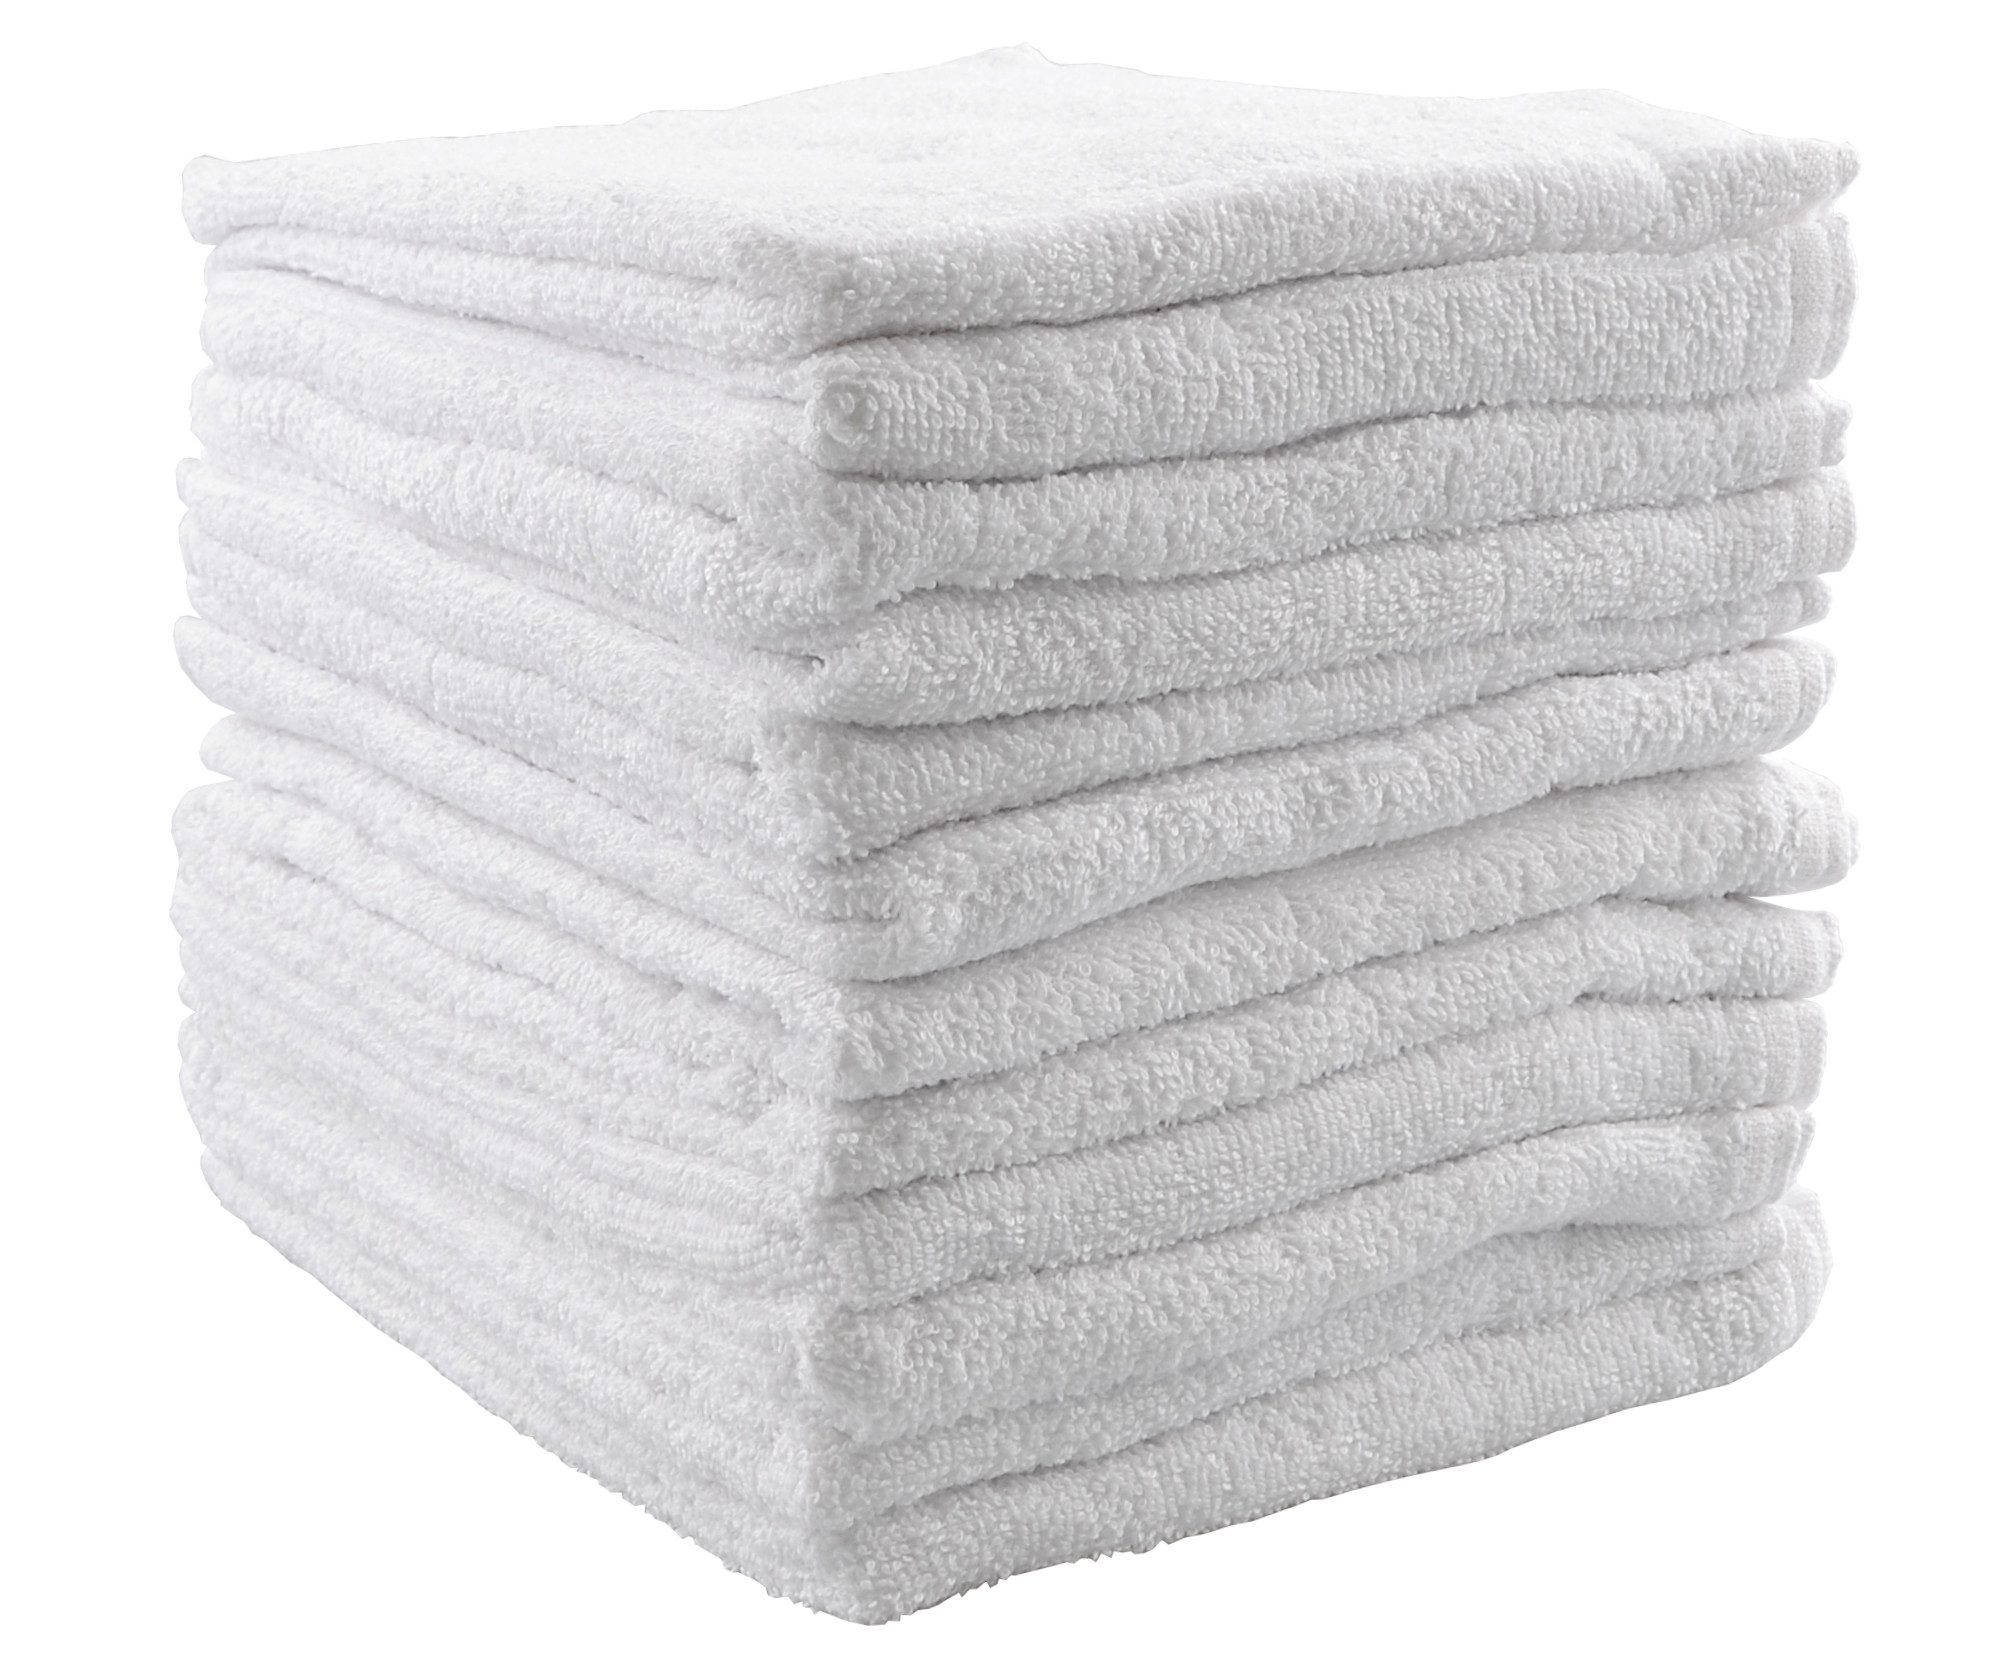 Ručníky froté 80 x 50 cm, 100% bavlna, Sibel, bílé - 12 ks (3500301) + DÁREK ZDARMA